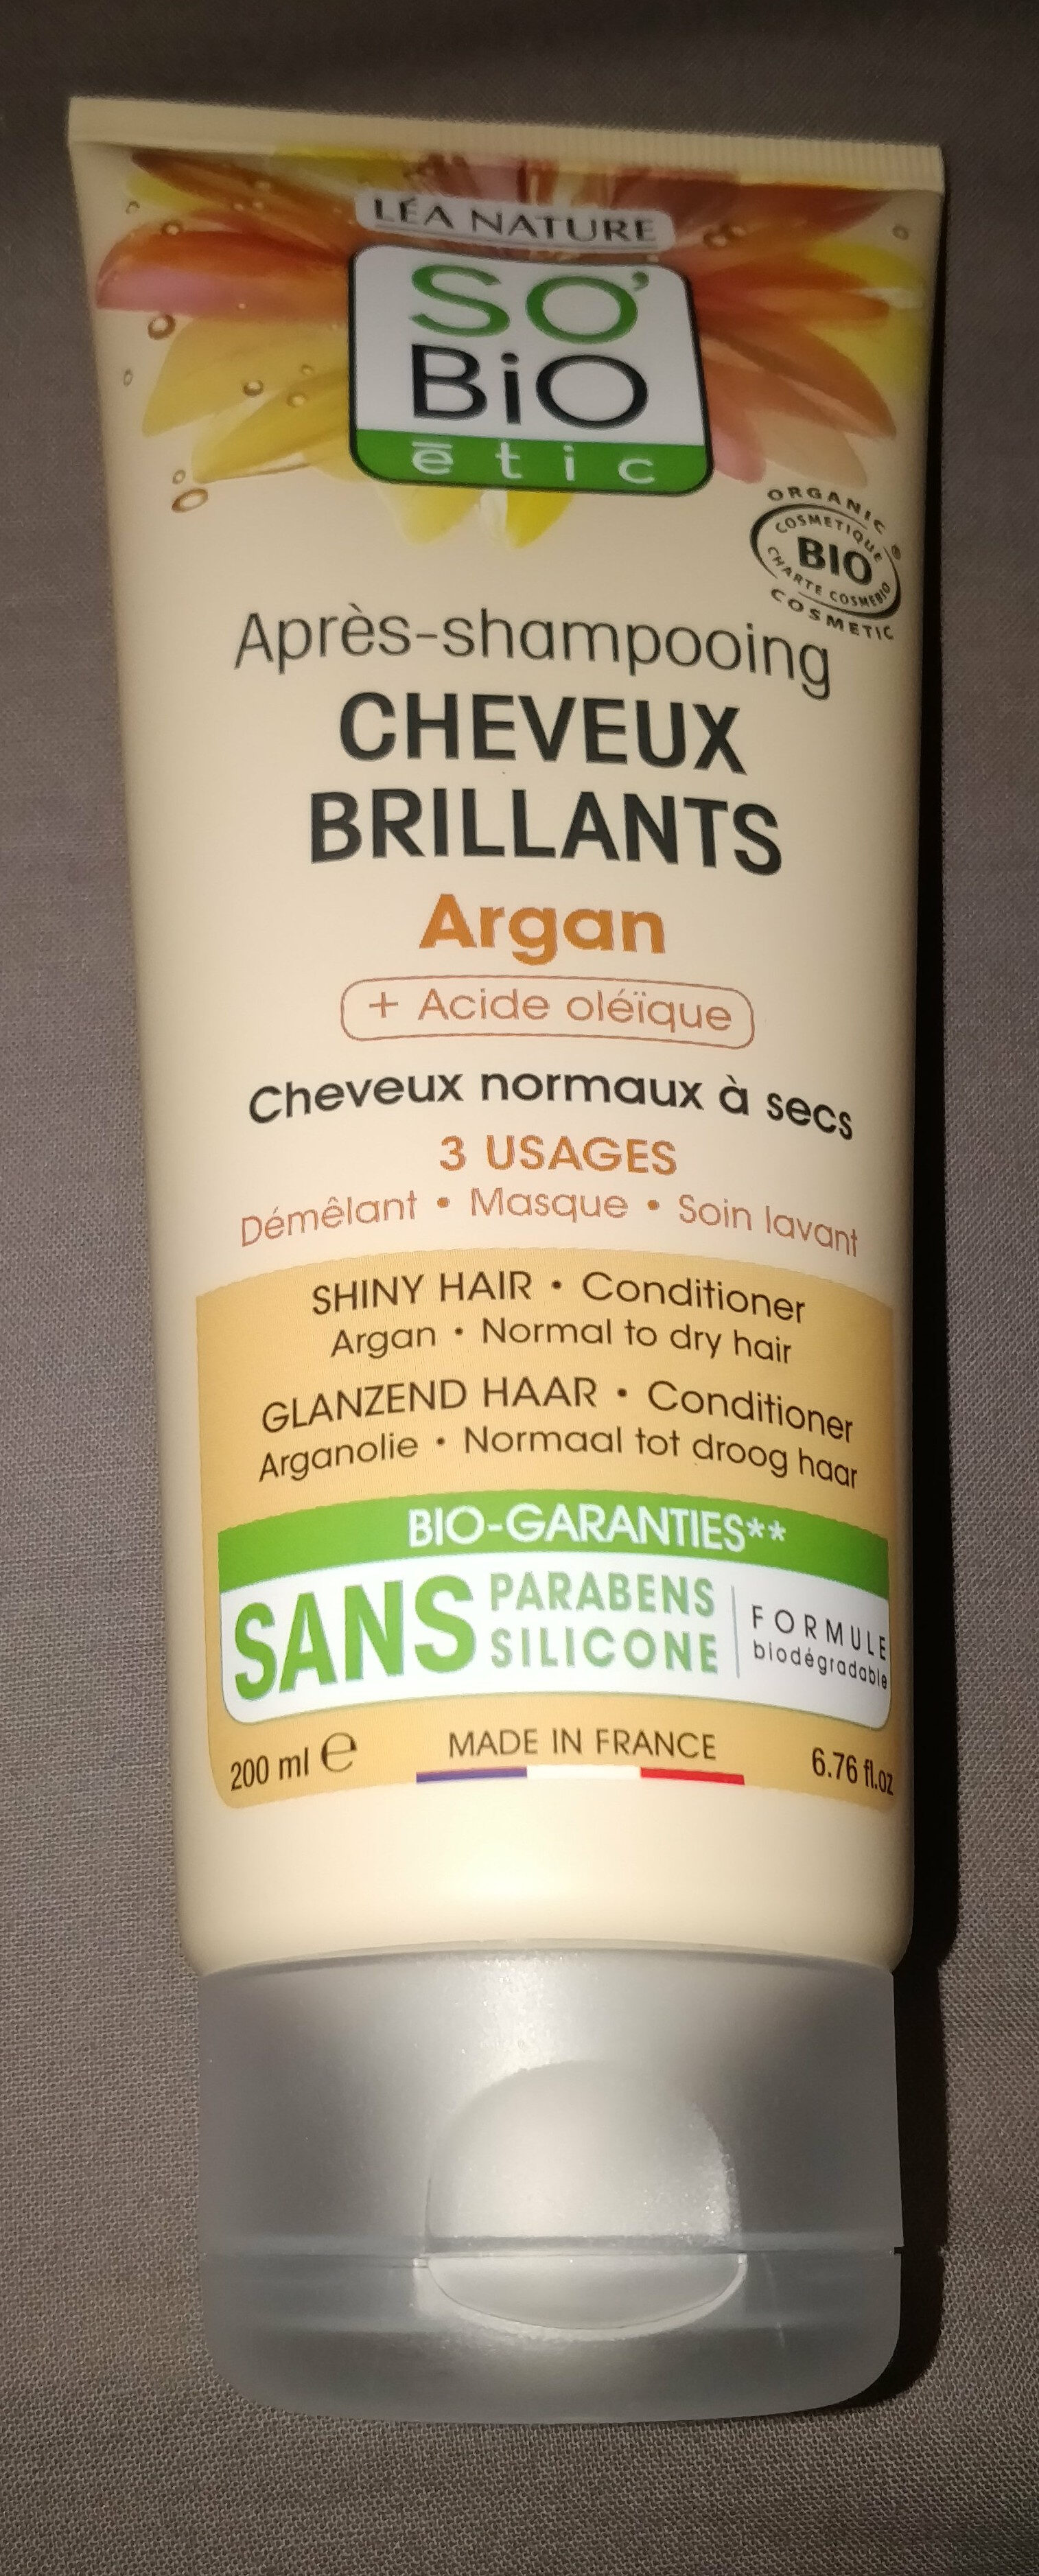 Après-Shampoing Cheveux Brillants - Product - fr